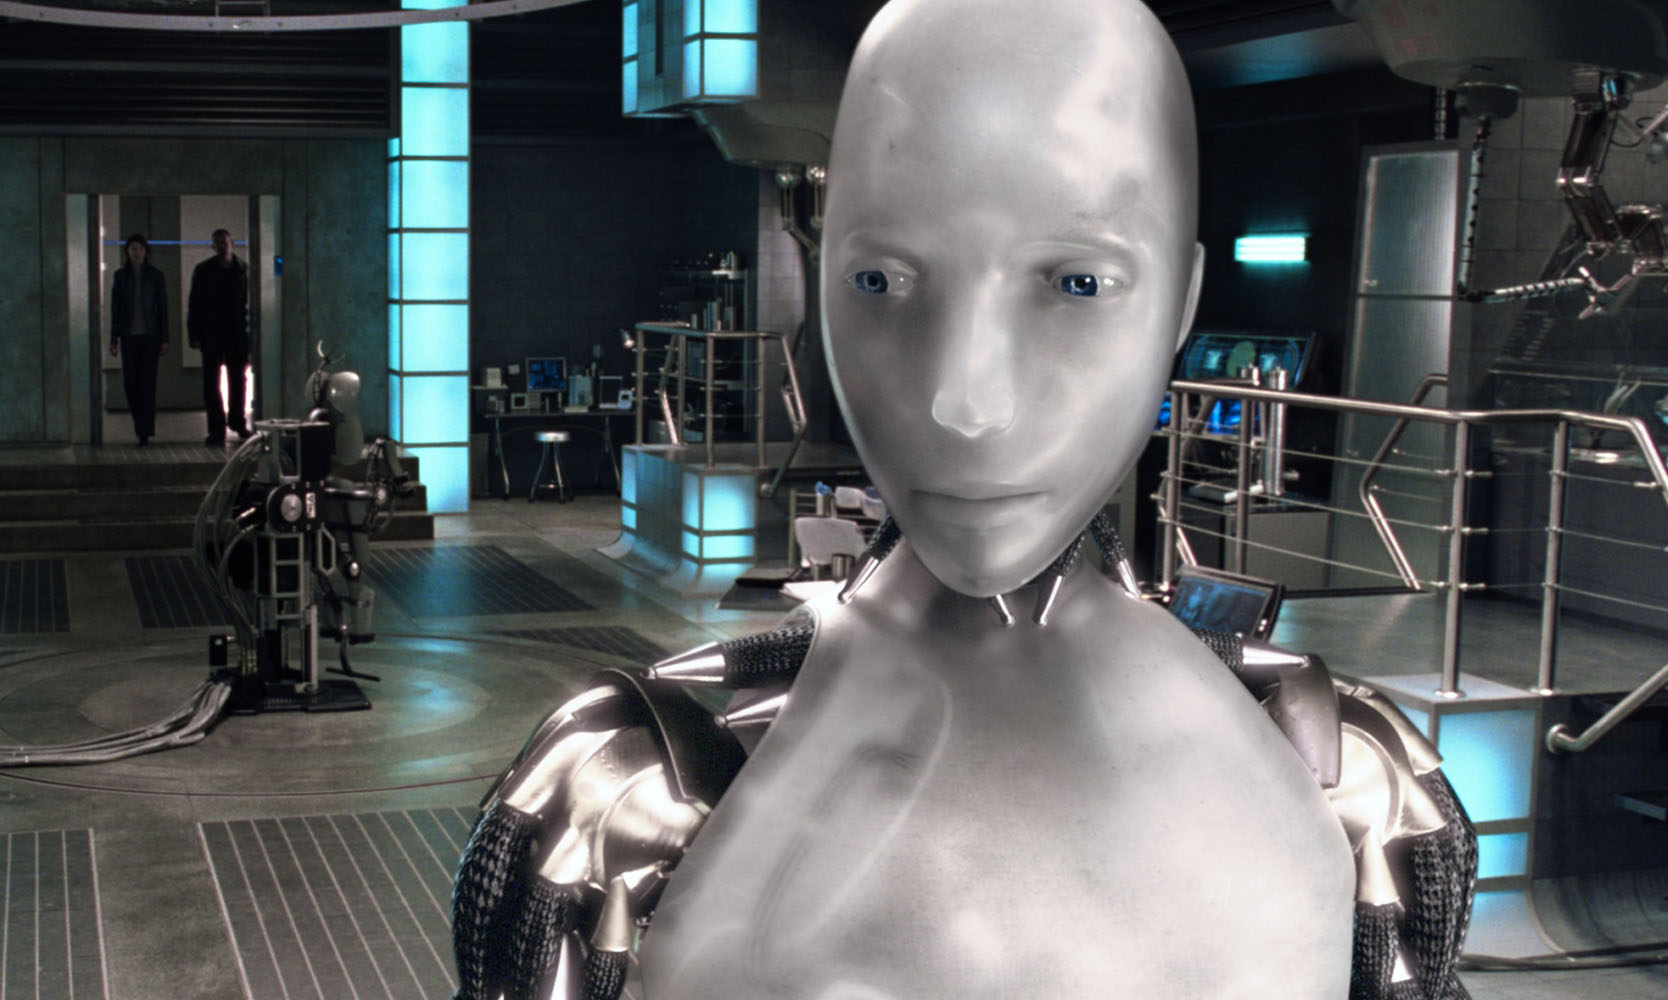 Z hj jn. Я робот 2004. Робот Санни из я робот. Уилл Смит я робот.